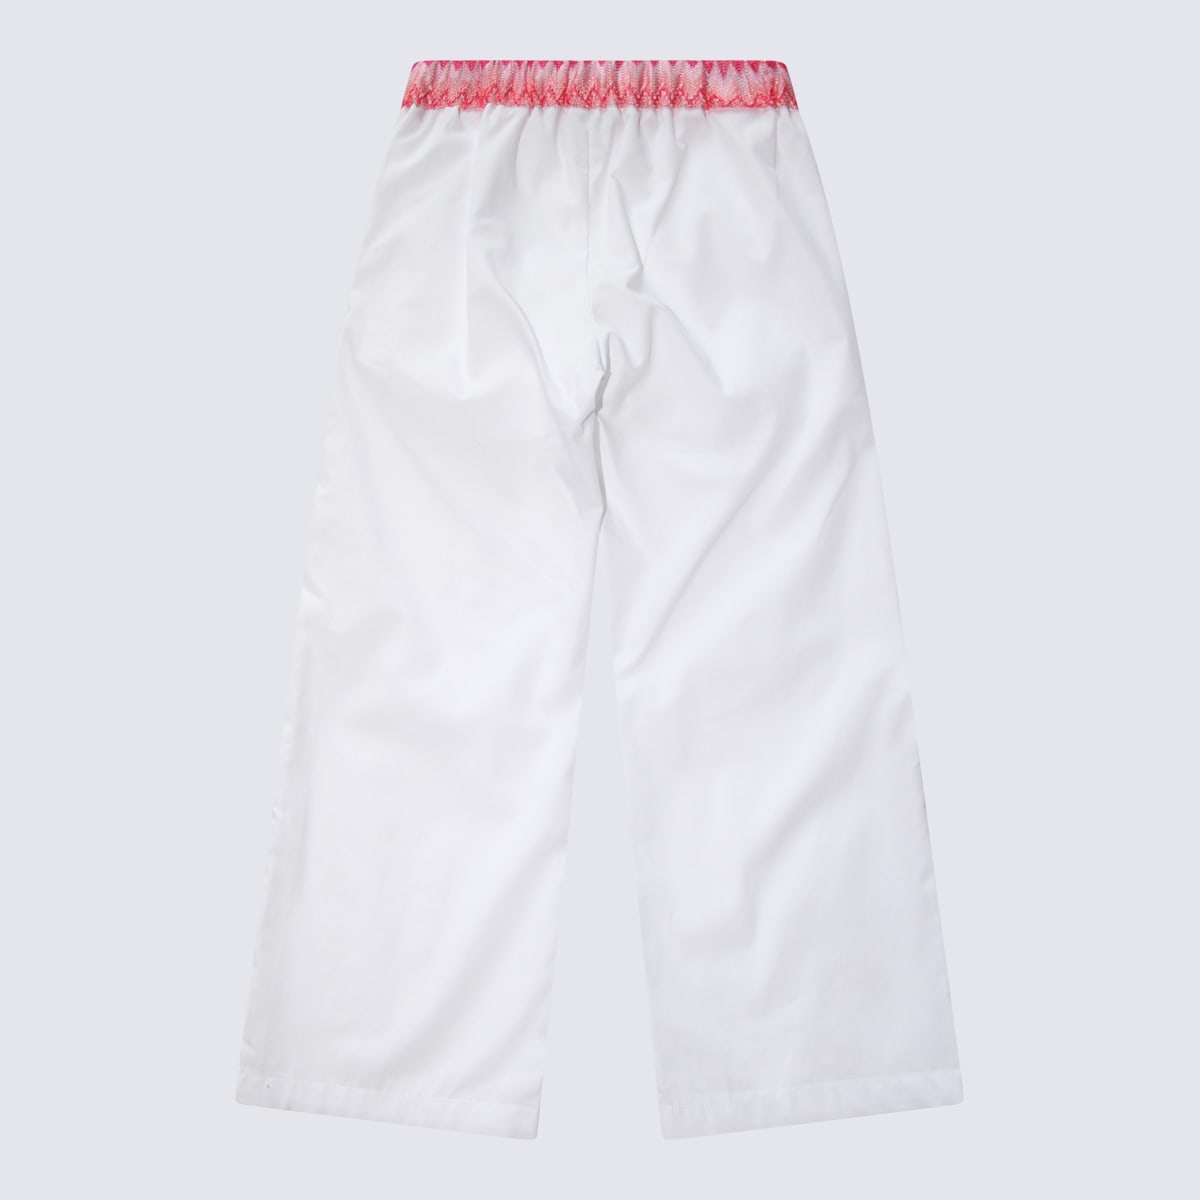 Missoni Kids' White Cotton Pants